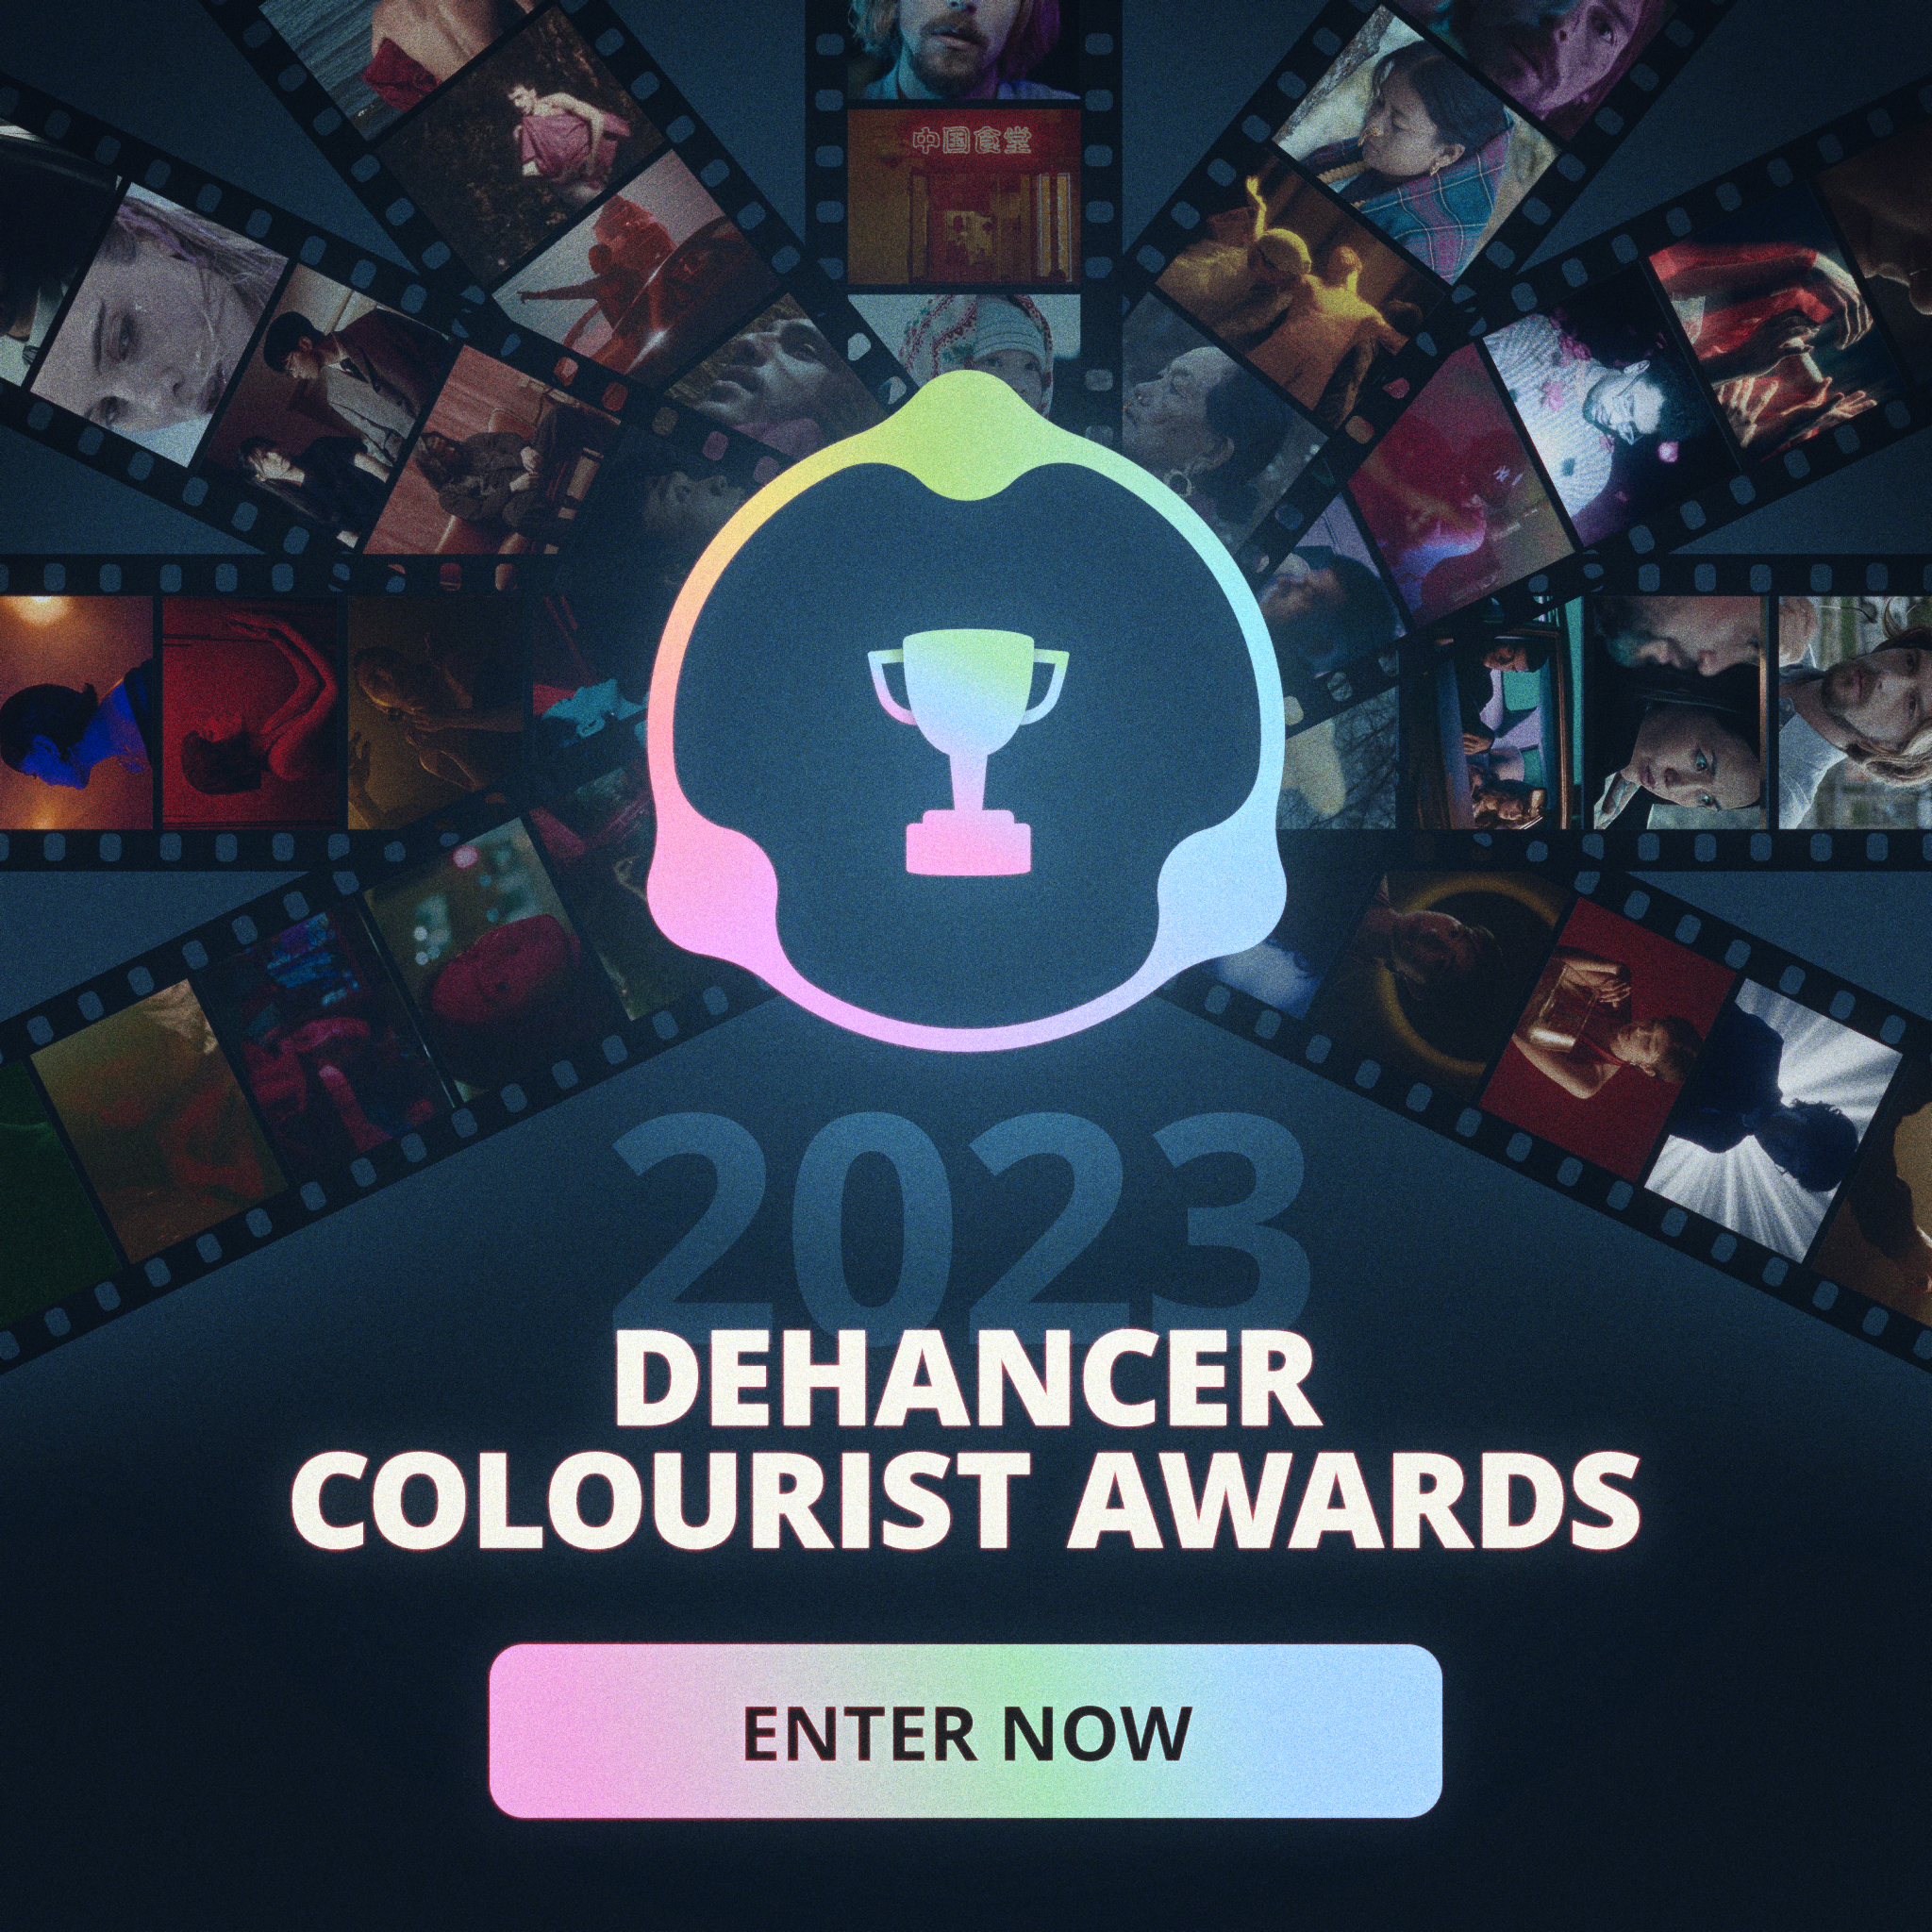 dehancer-colourist-awards-large-1-1.jpg